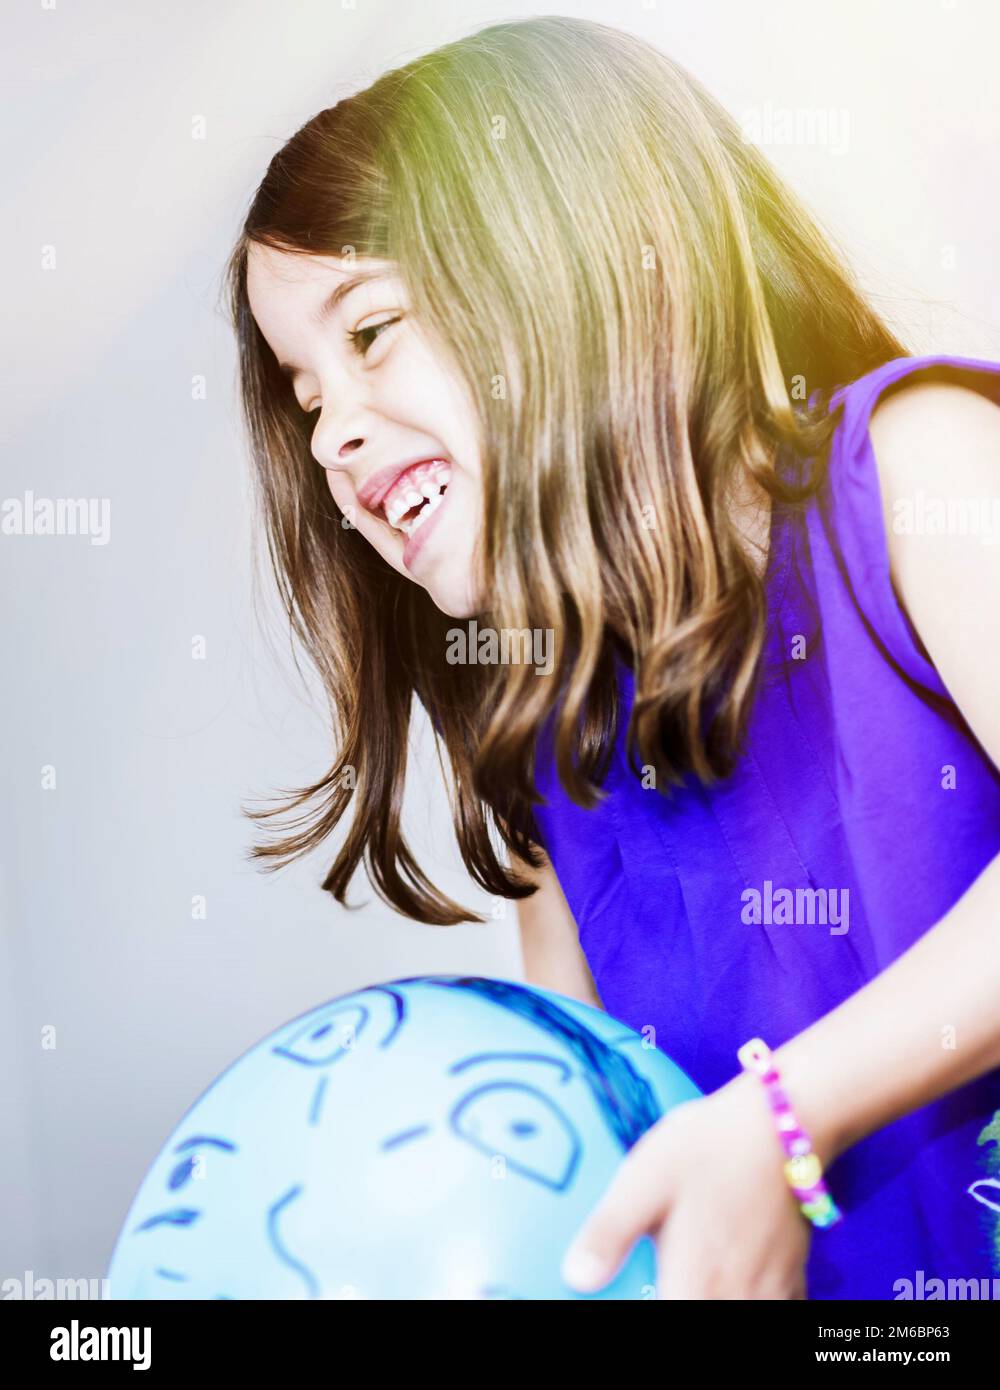 Ritratto di ragazza molto carina che gioca con un palloncino blu Foto Stock